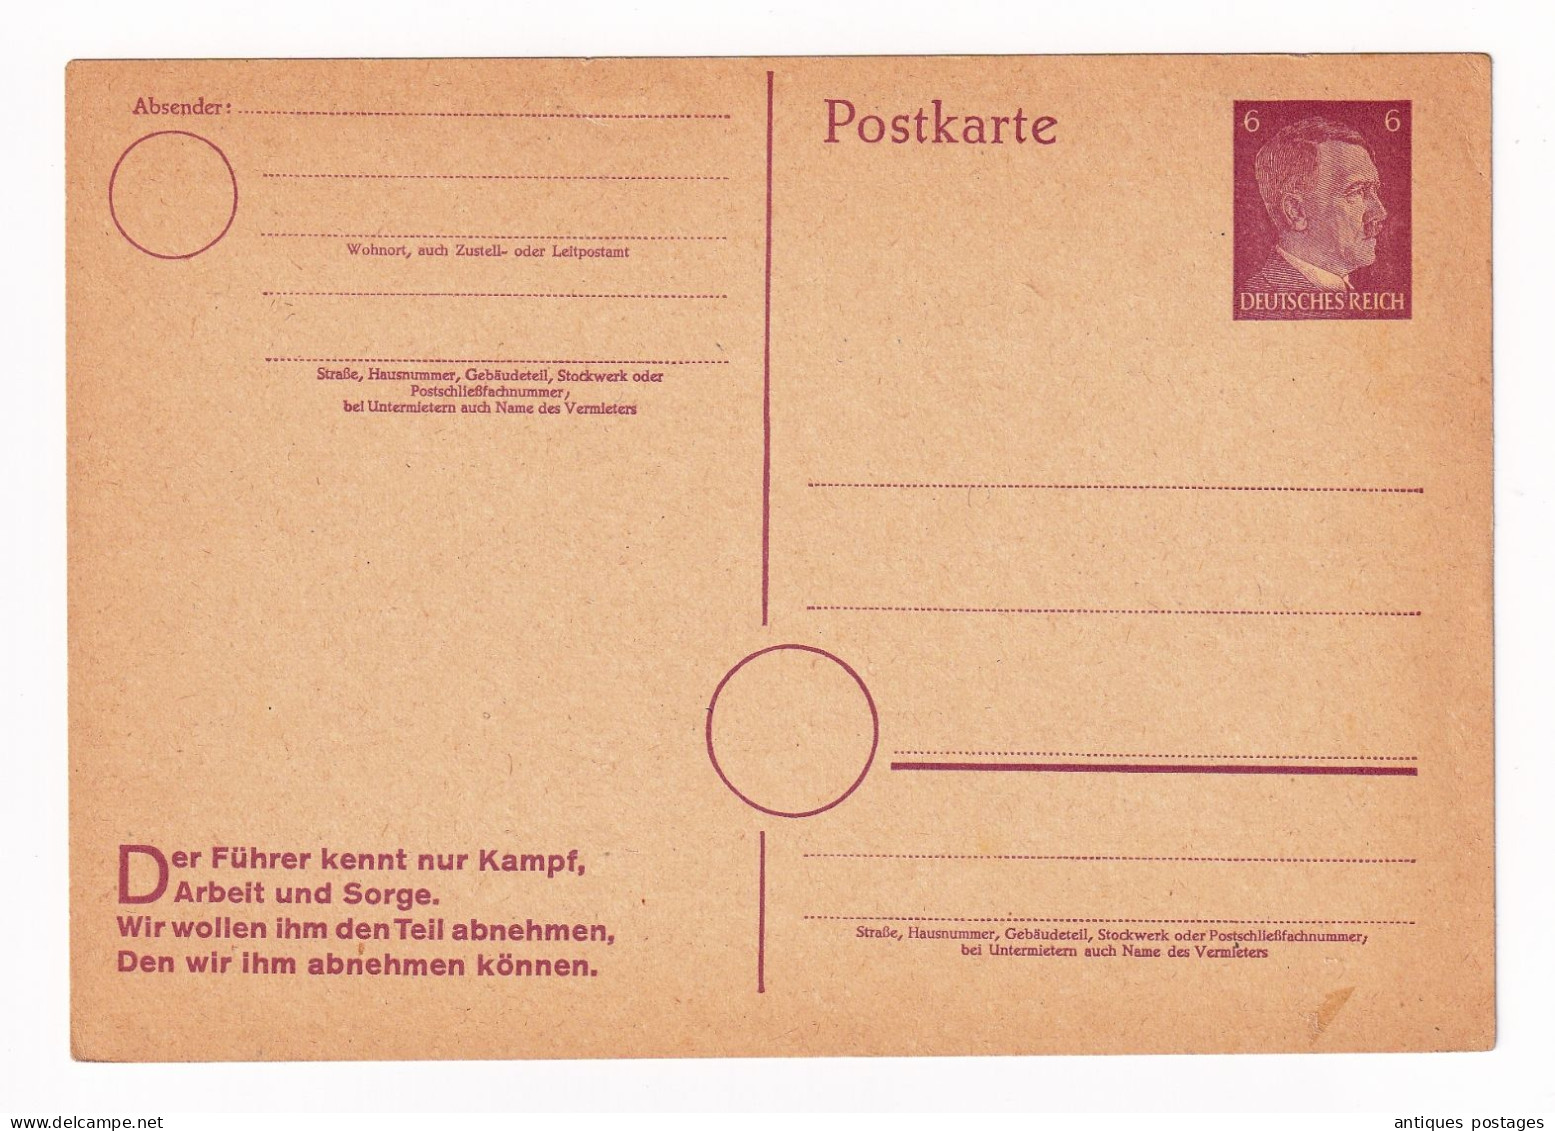 Postkarte Adolf Hitler Allemagne Deutschland Entier Postal Deutsches Reich - Cartes Postales